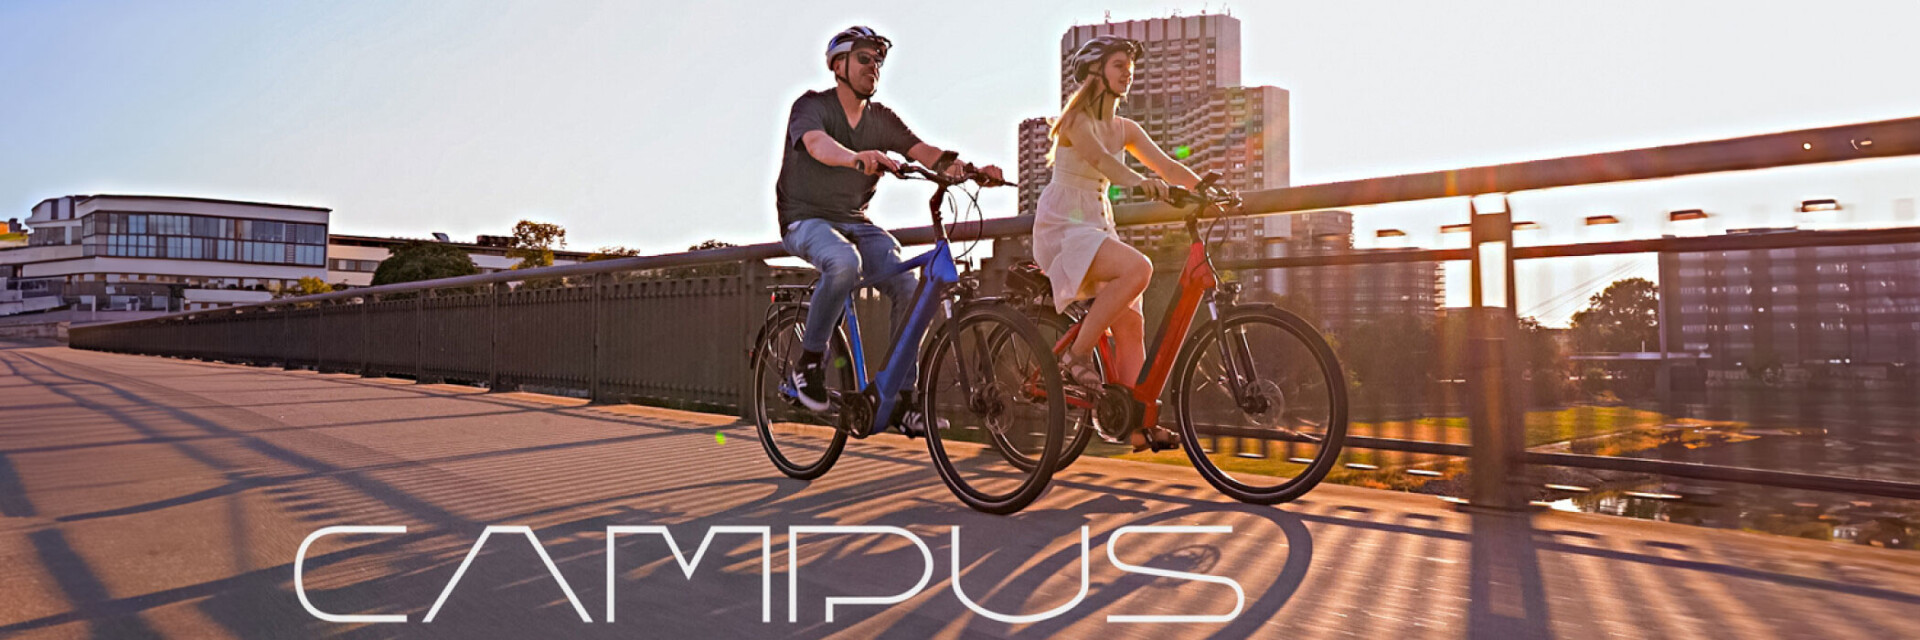 Campus-Bikes